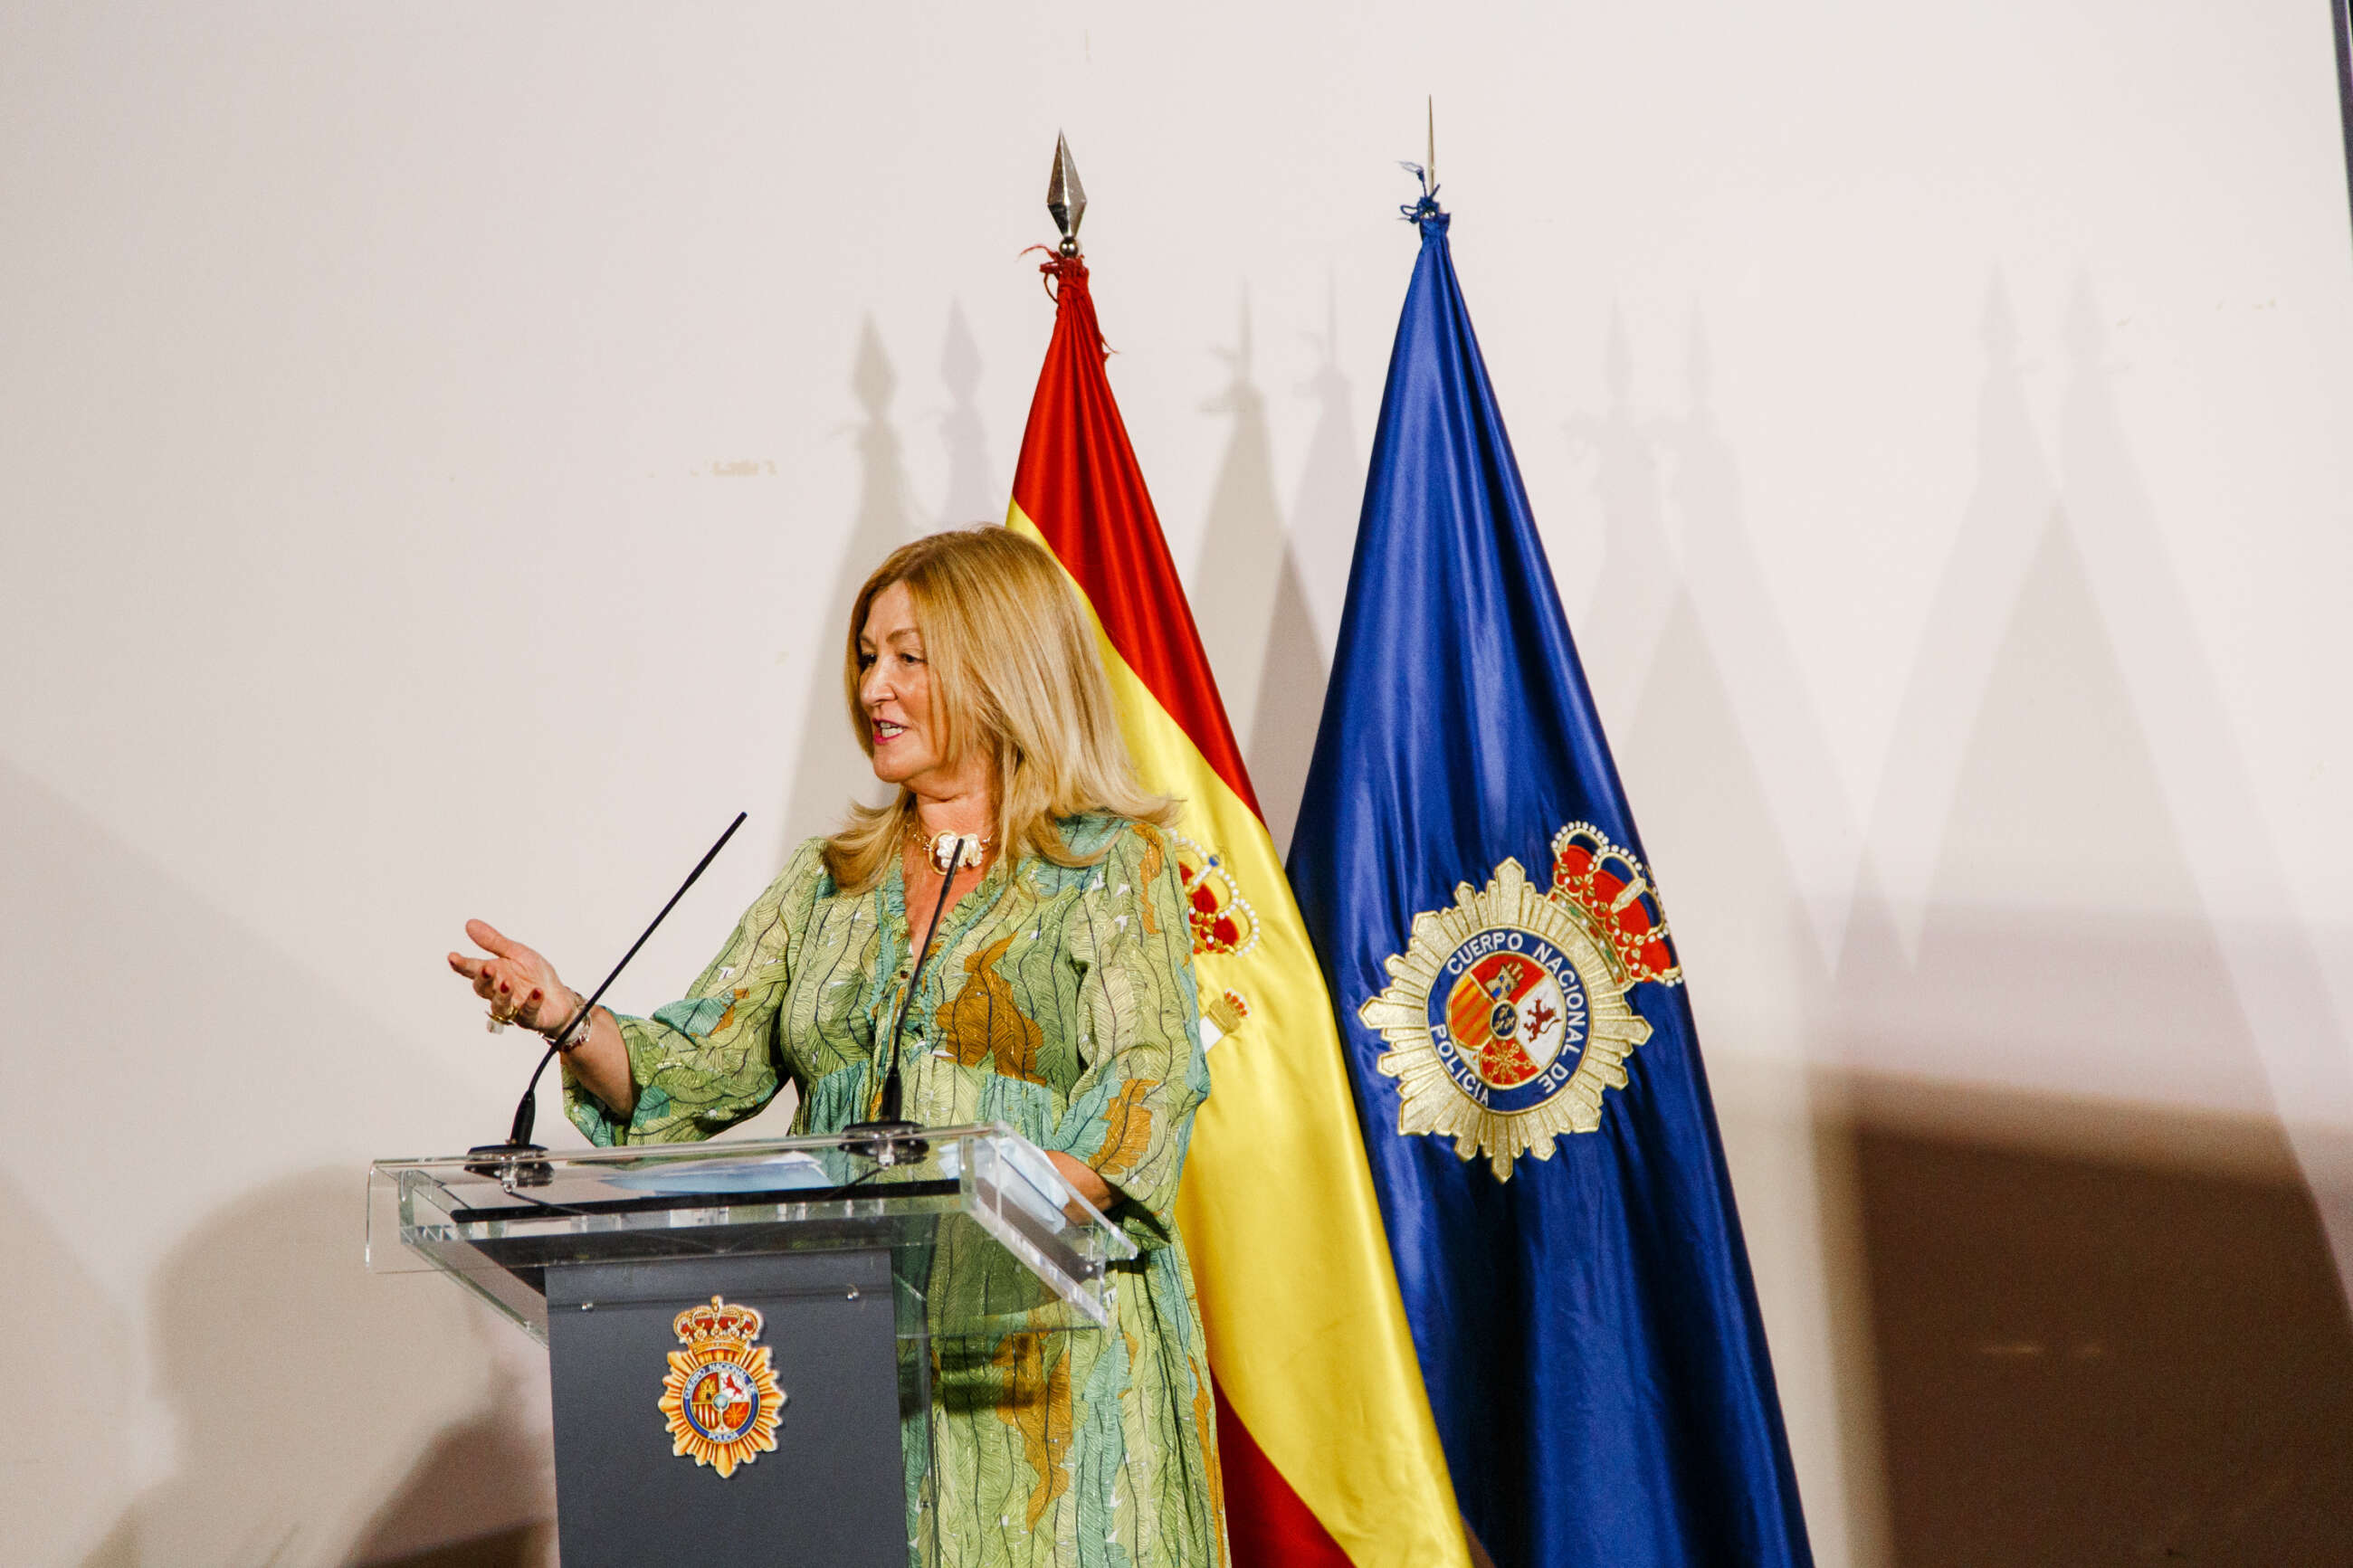 La nueva subsecretaria de Hacienda, Lidia Sánchez Milán. Foto: Mario Triviño / Europa Press